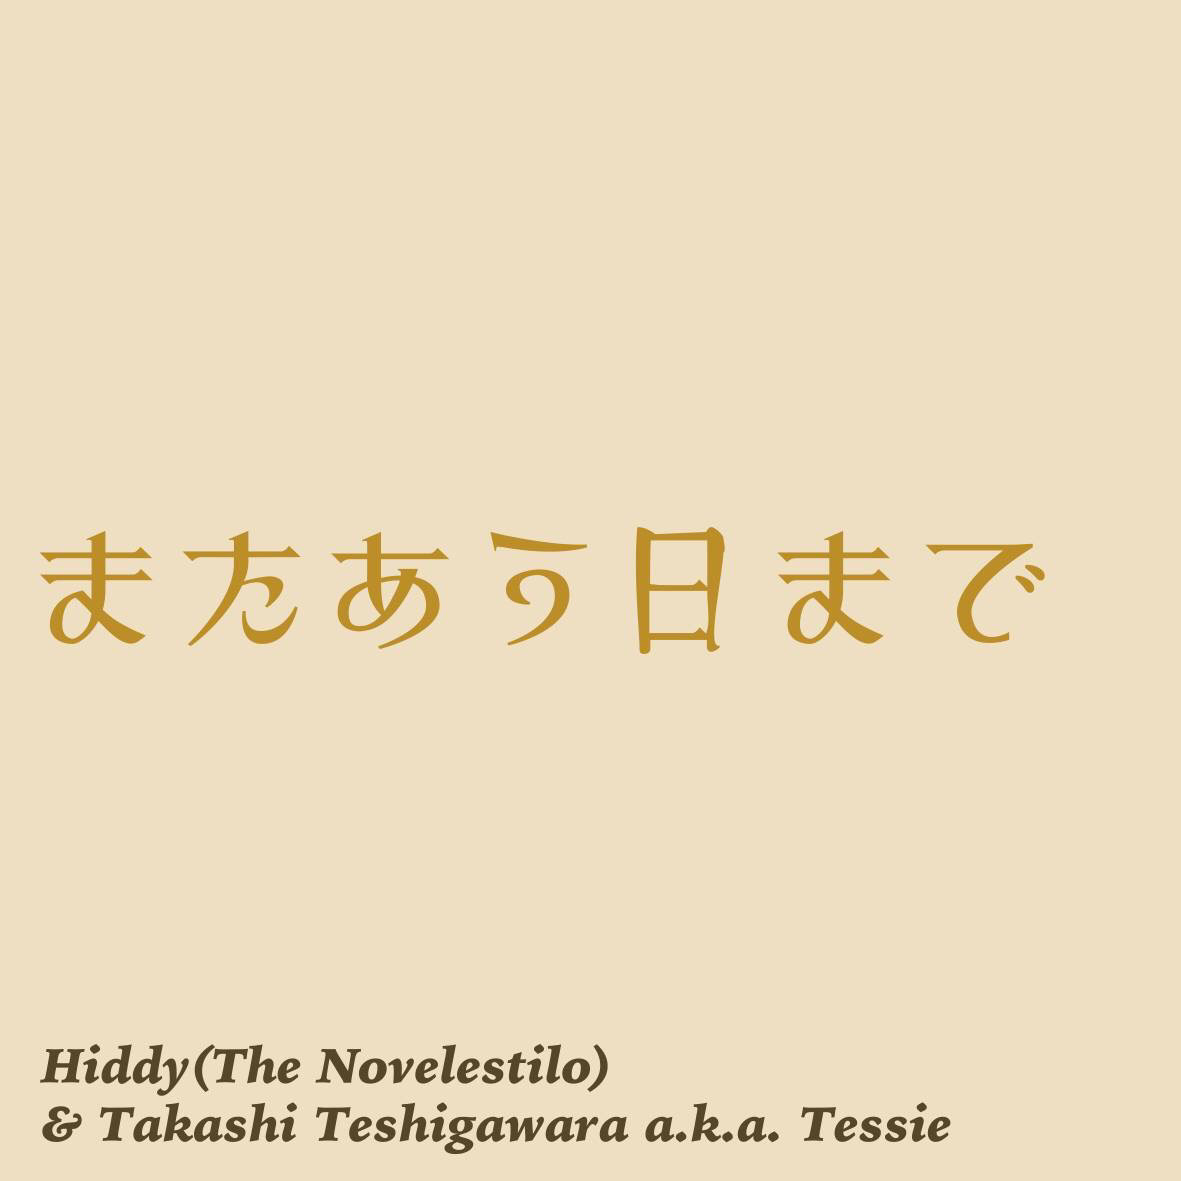 またあう日まで / Hiddy & TAKASHI TESHIGAWARA a.k.a. Tessie